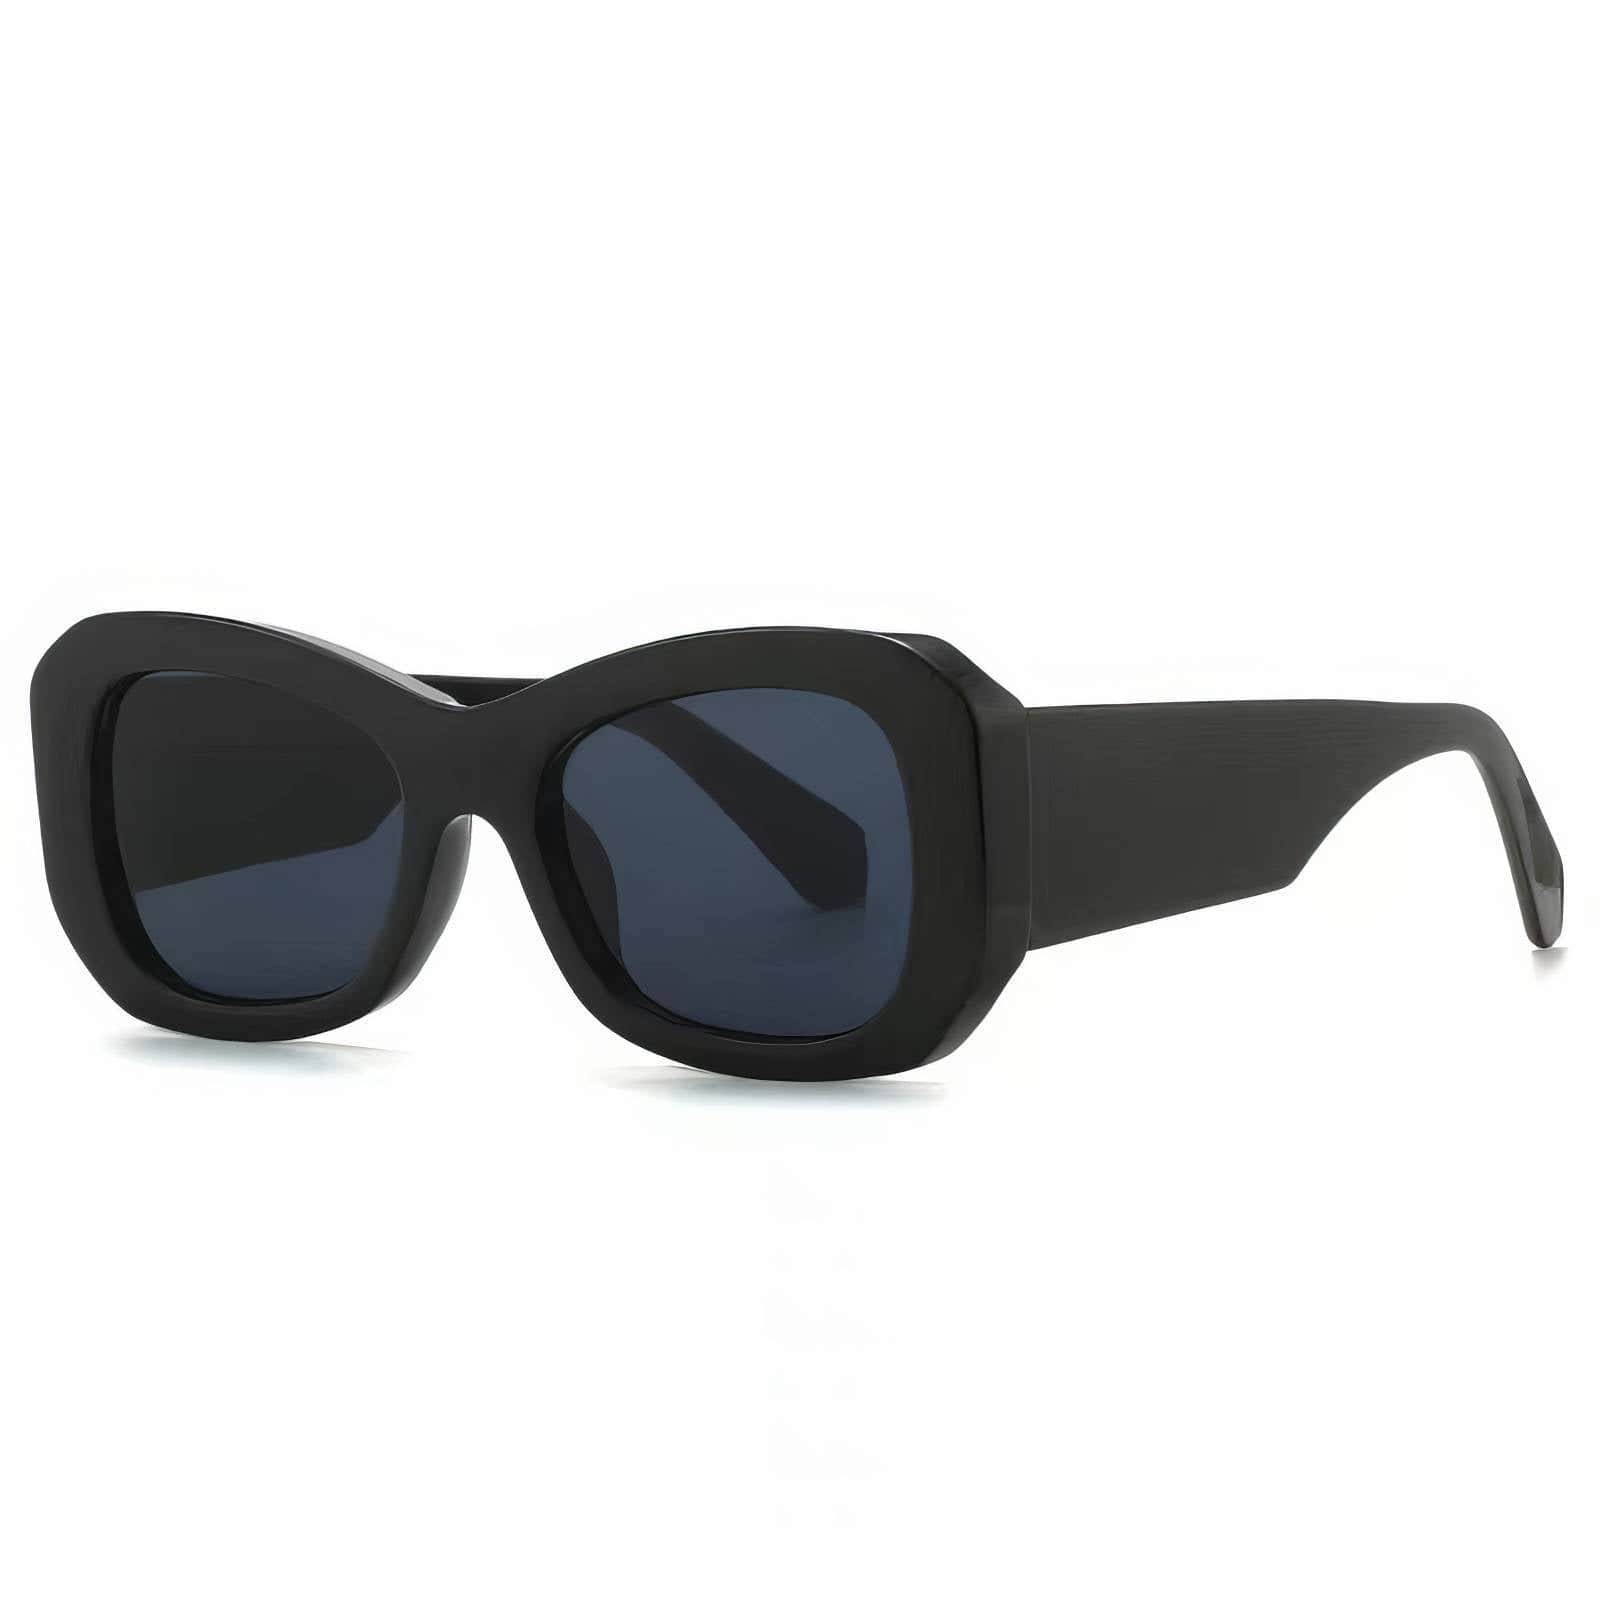 Funky Trending Square Sunglasses Black/Gray / Resin